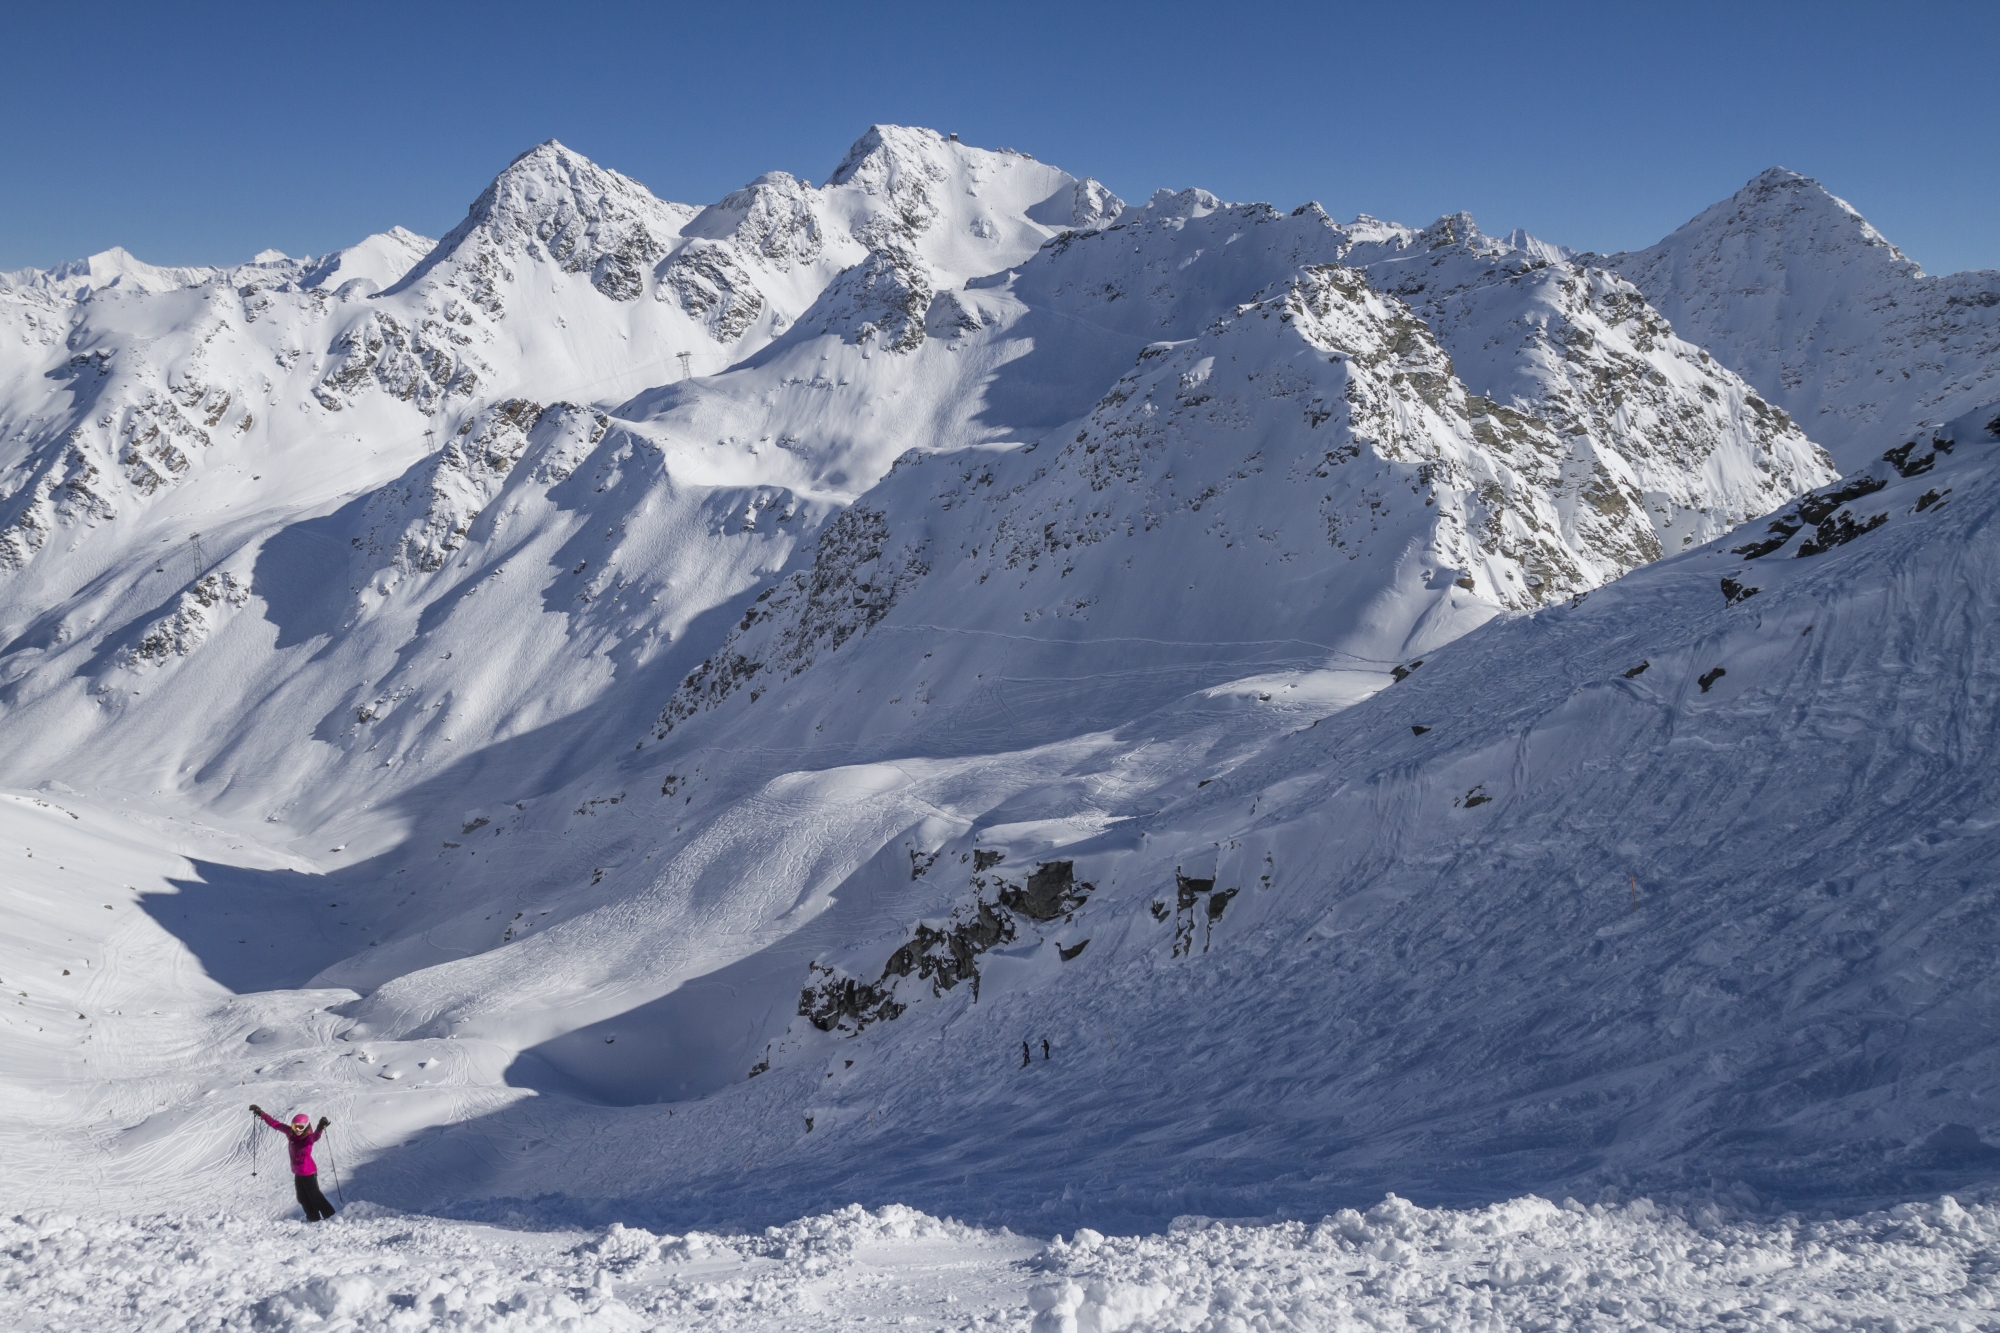 Les itinéraires à ski permettent de goûter au freeride dans un maximum de sécurité. 